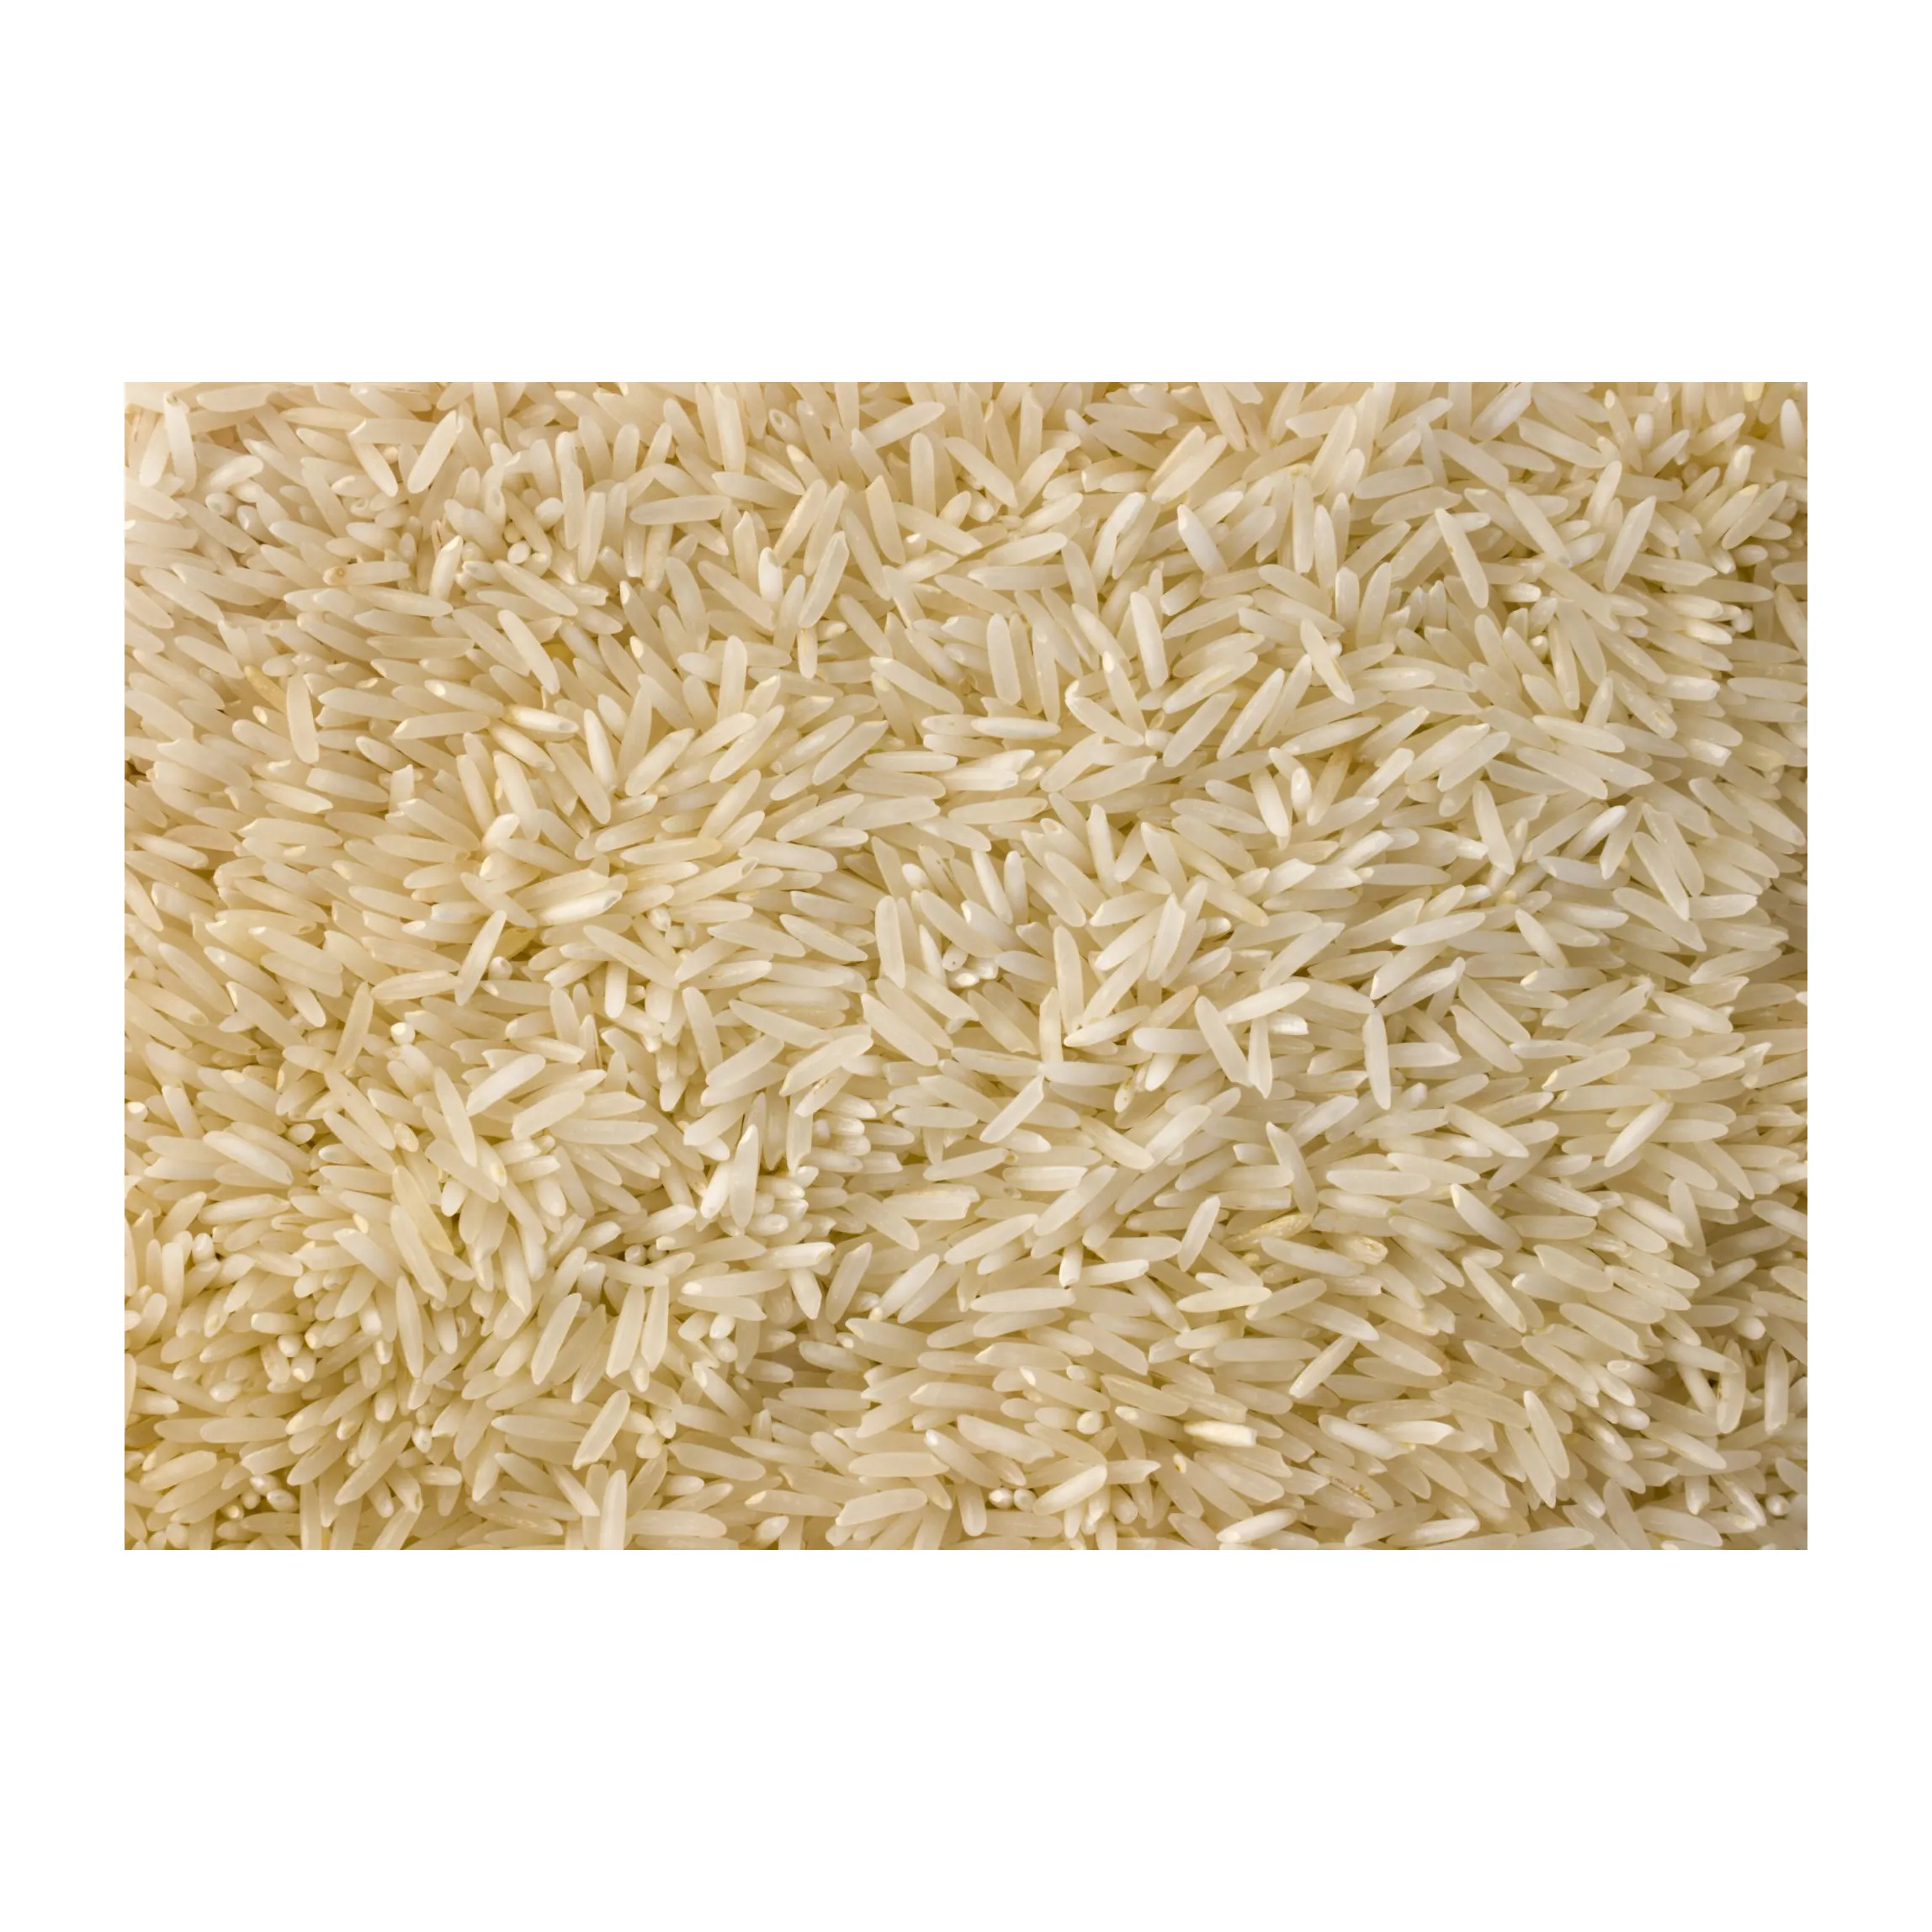 أرز أبيض طويل الحبوب/مكسور/محمود بجودة عالية للبيع، أرز بسمتي عالي الجودة، أرز بسمتي طويل الحبوب، أرز البيراني